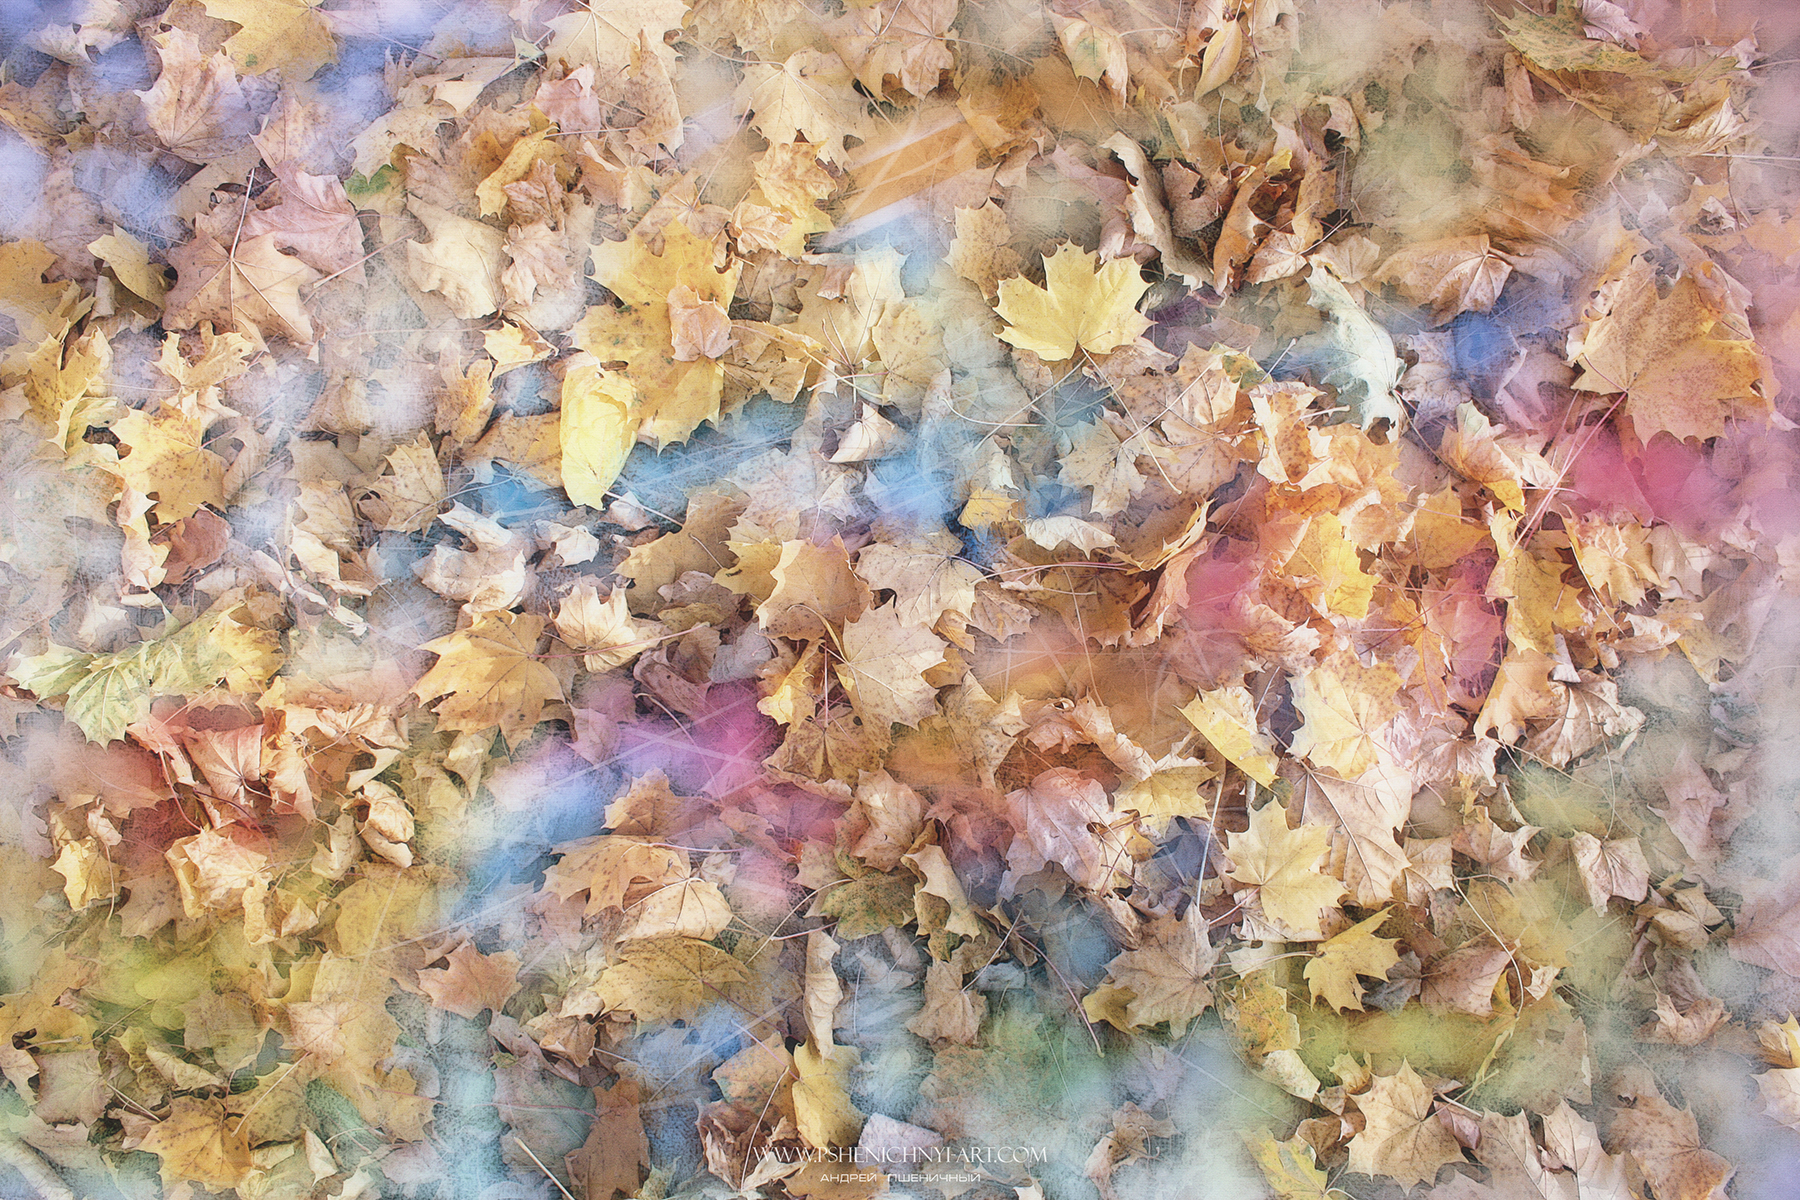 осень, опавшие листья, клён, акварель, абстракция, свет, палитра, осколки, октябрь, Пшеничный Андрей